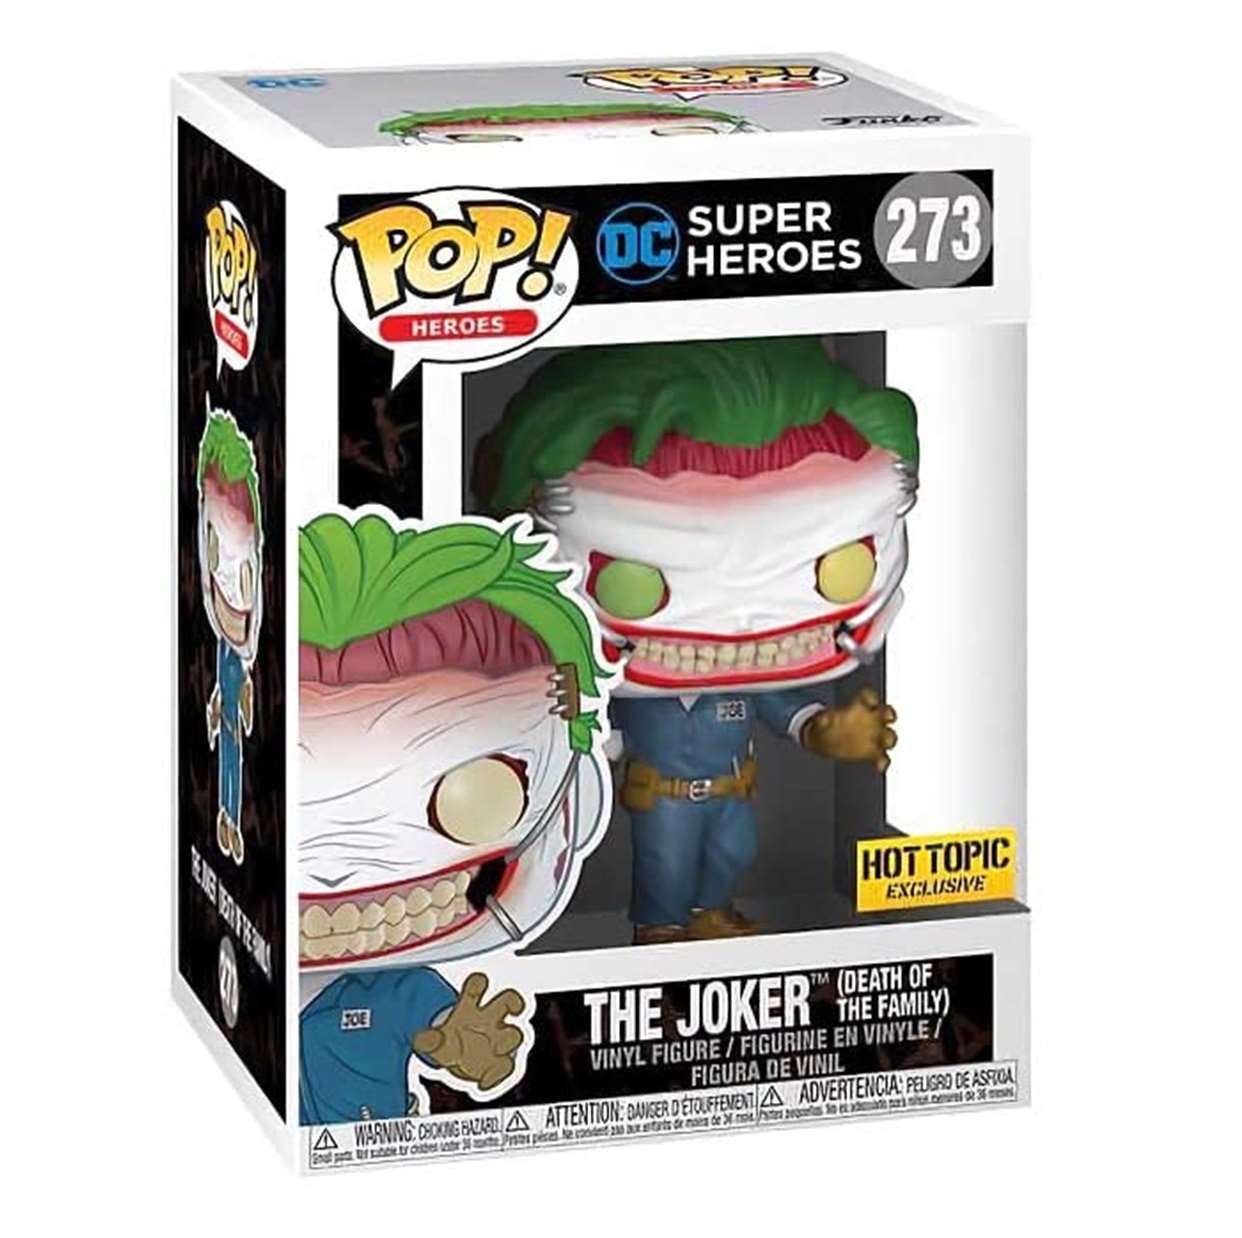 The Joker #273 Super Heroes Funko Pop! Exclusivo Hot Topic